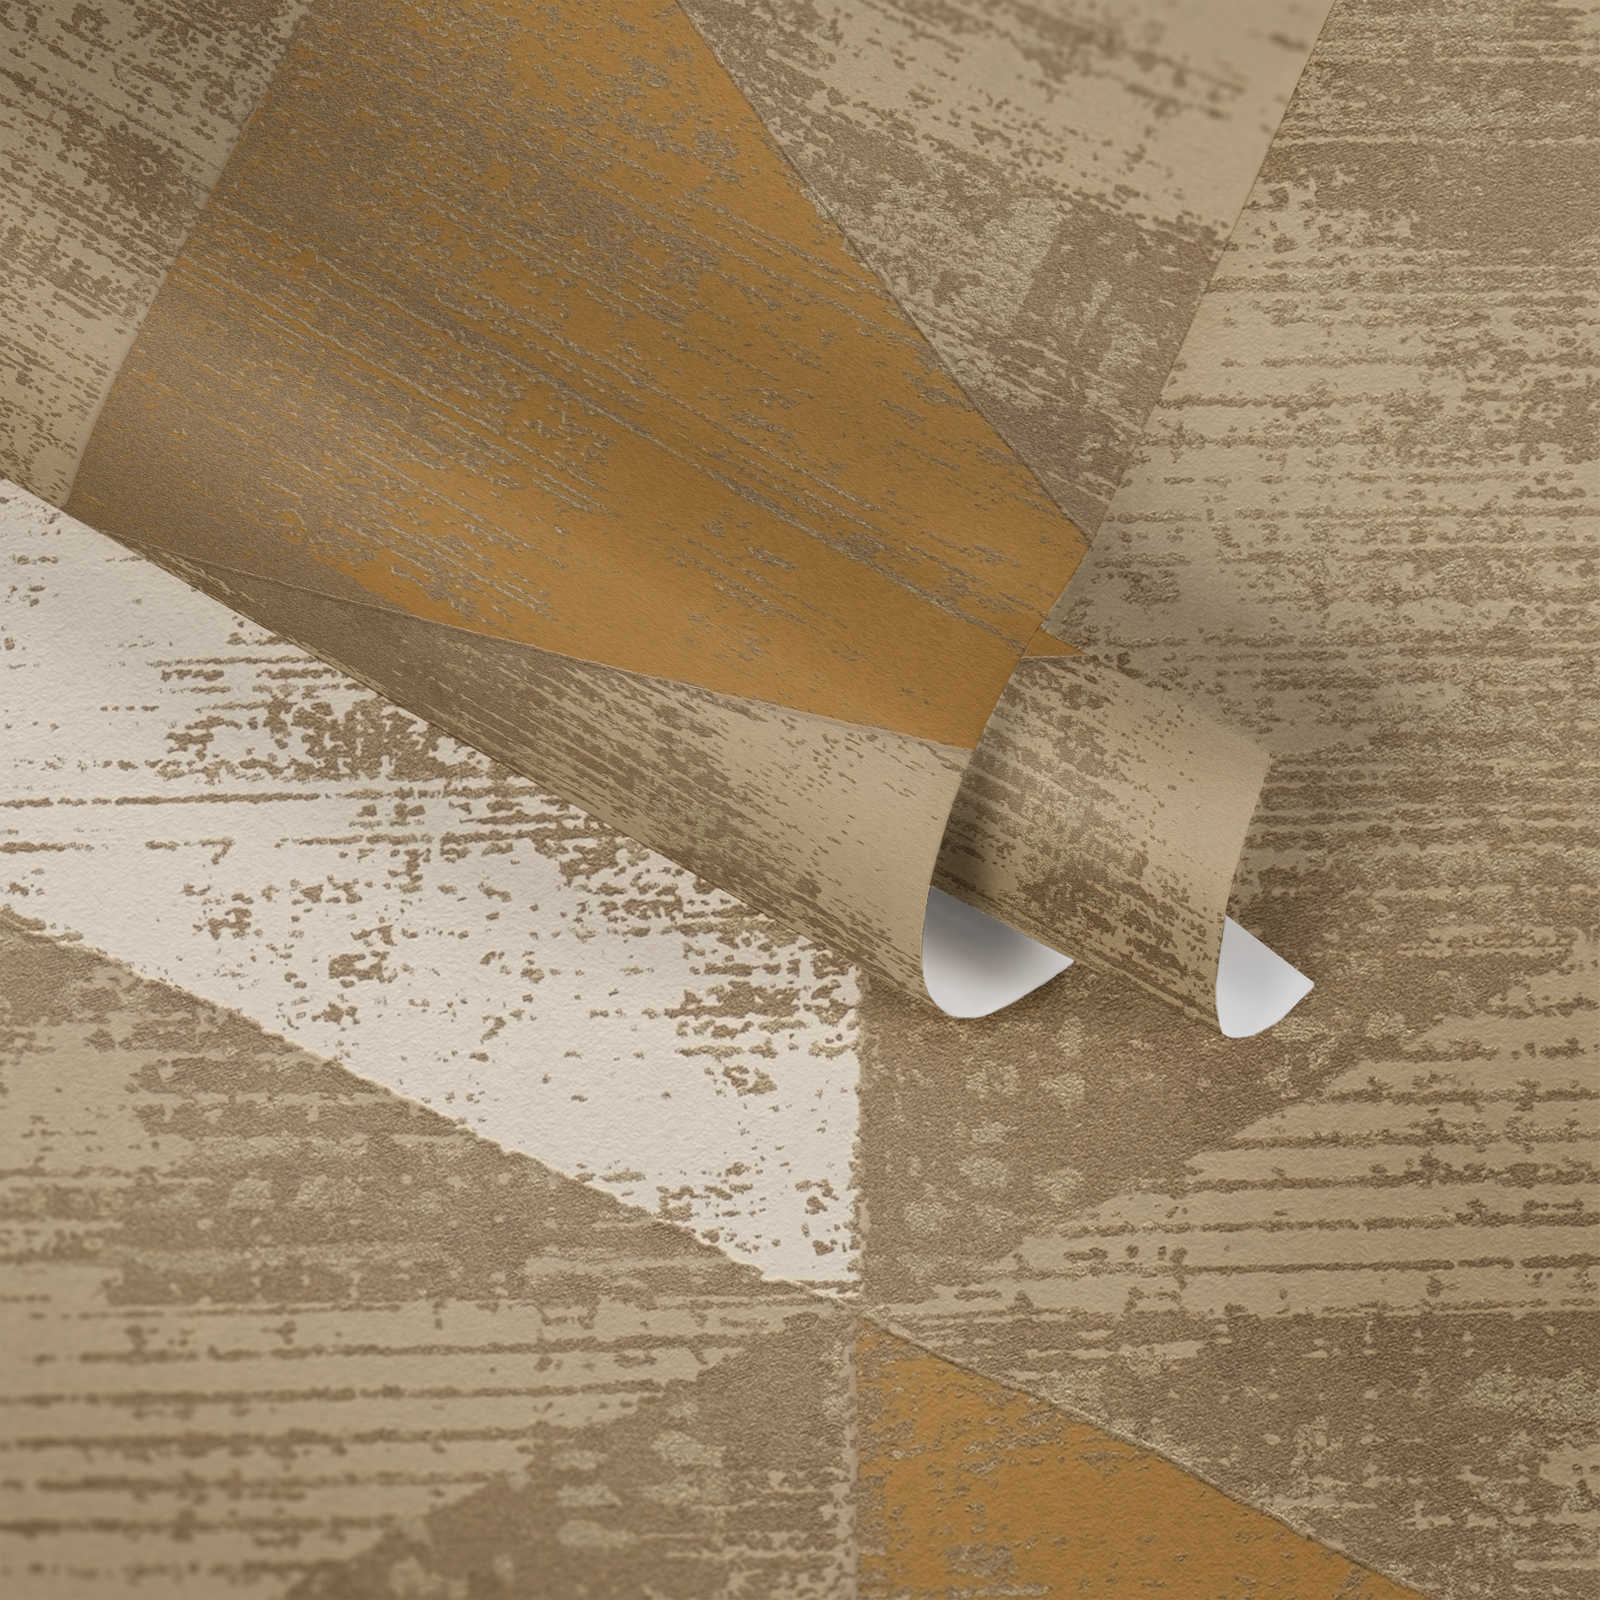             Papier peint style industriel avec aspect rustique métallique - métallique, beige
        